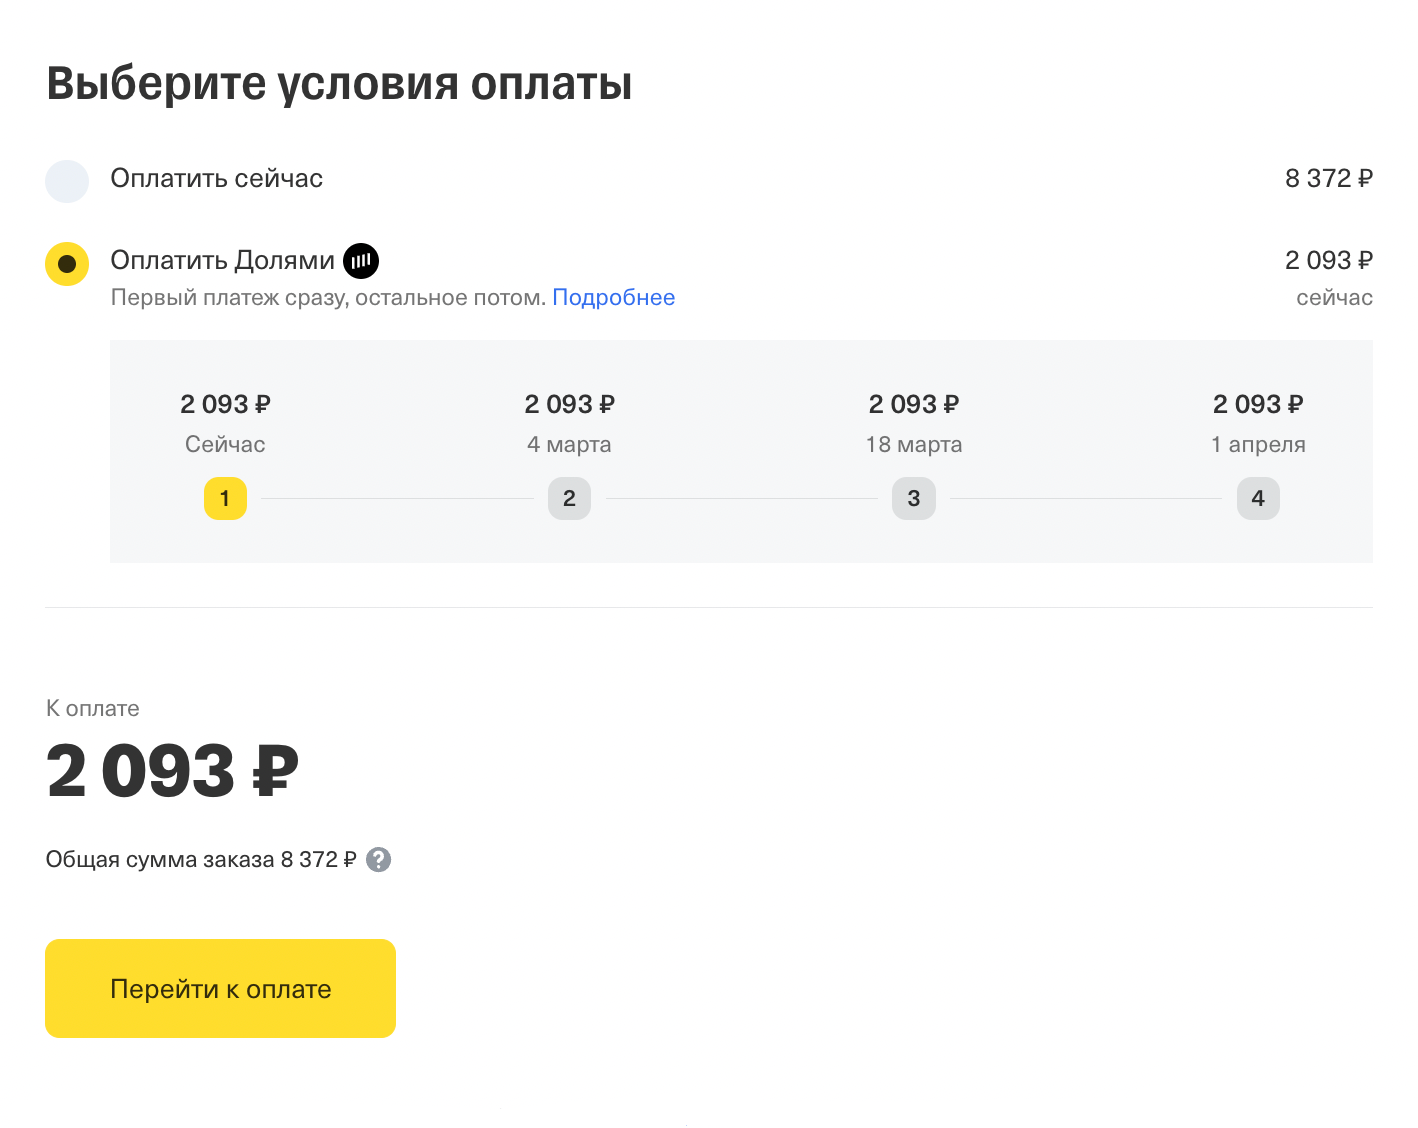 Оплатить Долями можно только билеты, которые продает Тинькофф. Источник: tinkoff.ru